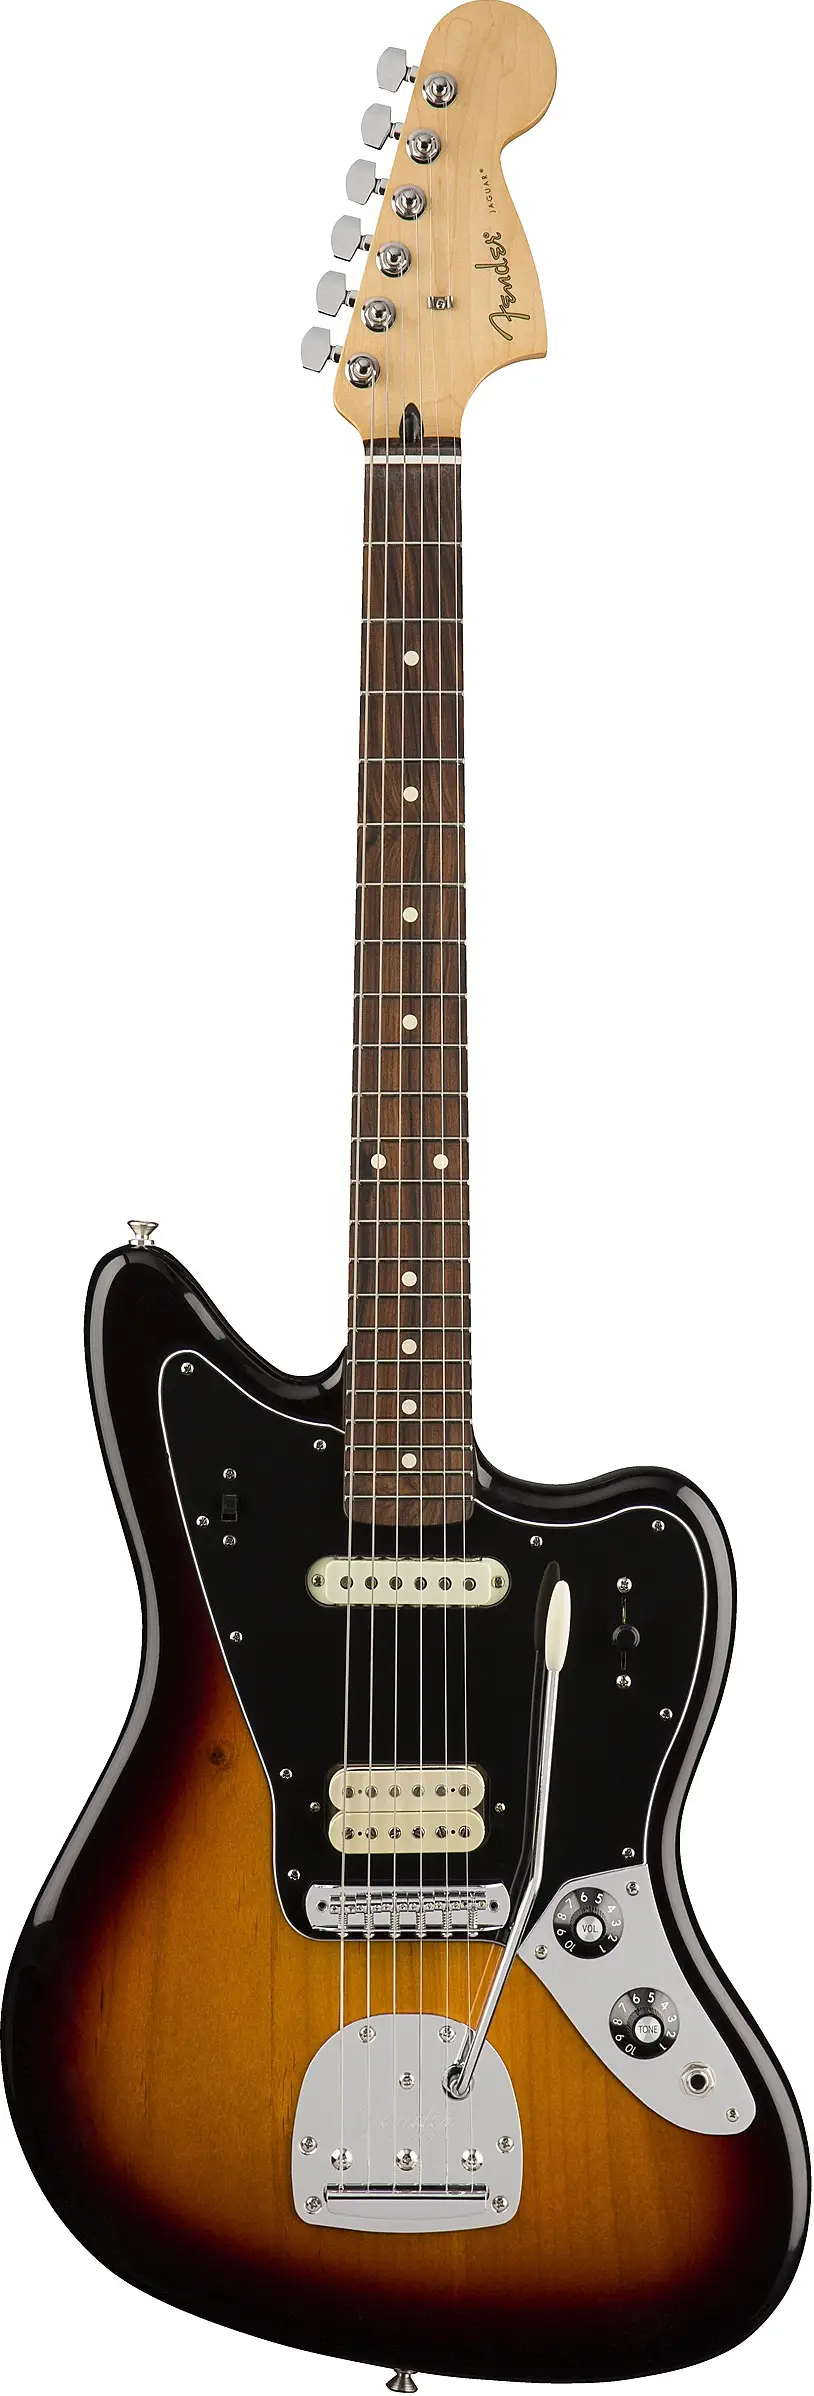 Player Jaguar by Fender